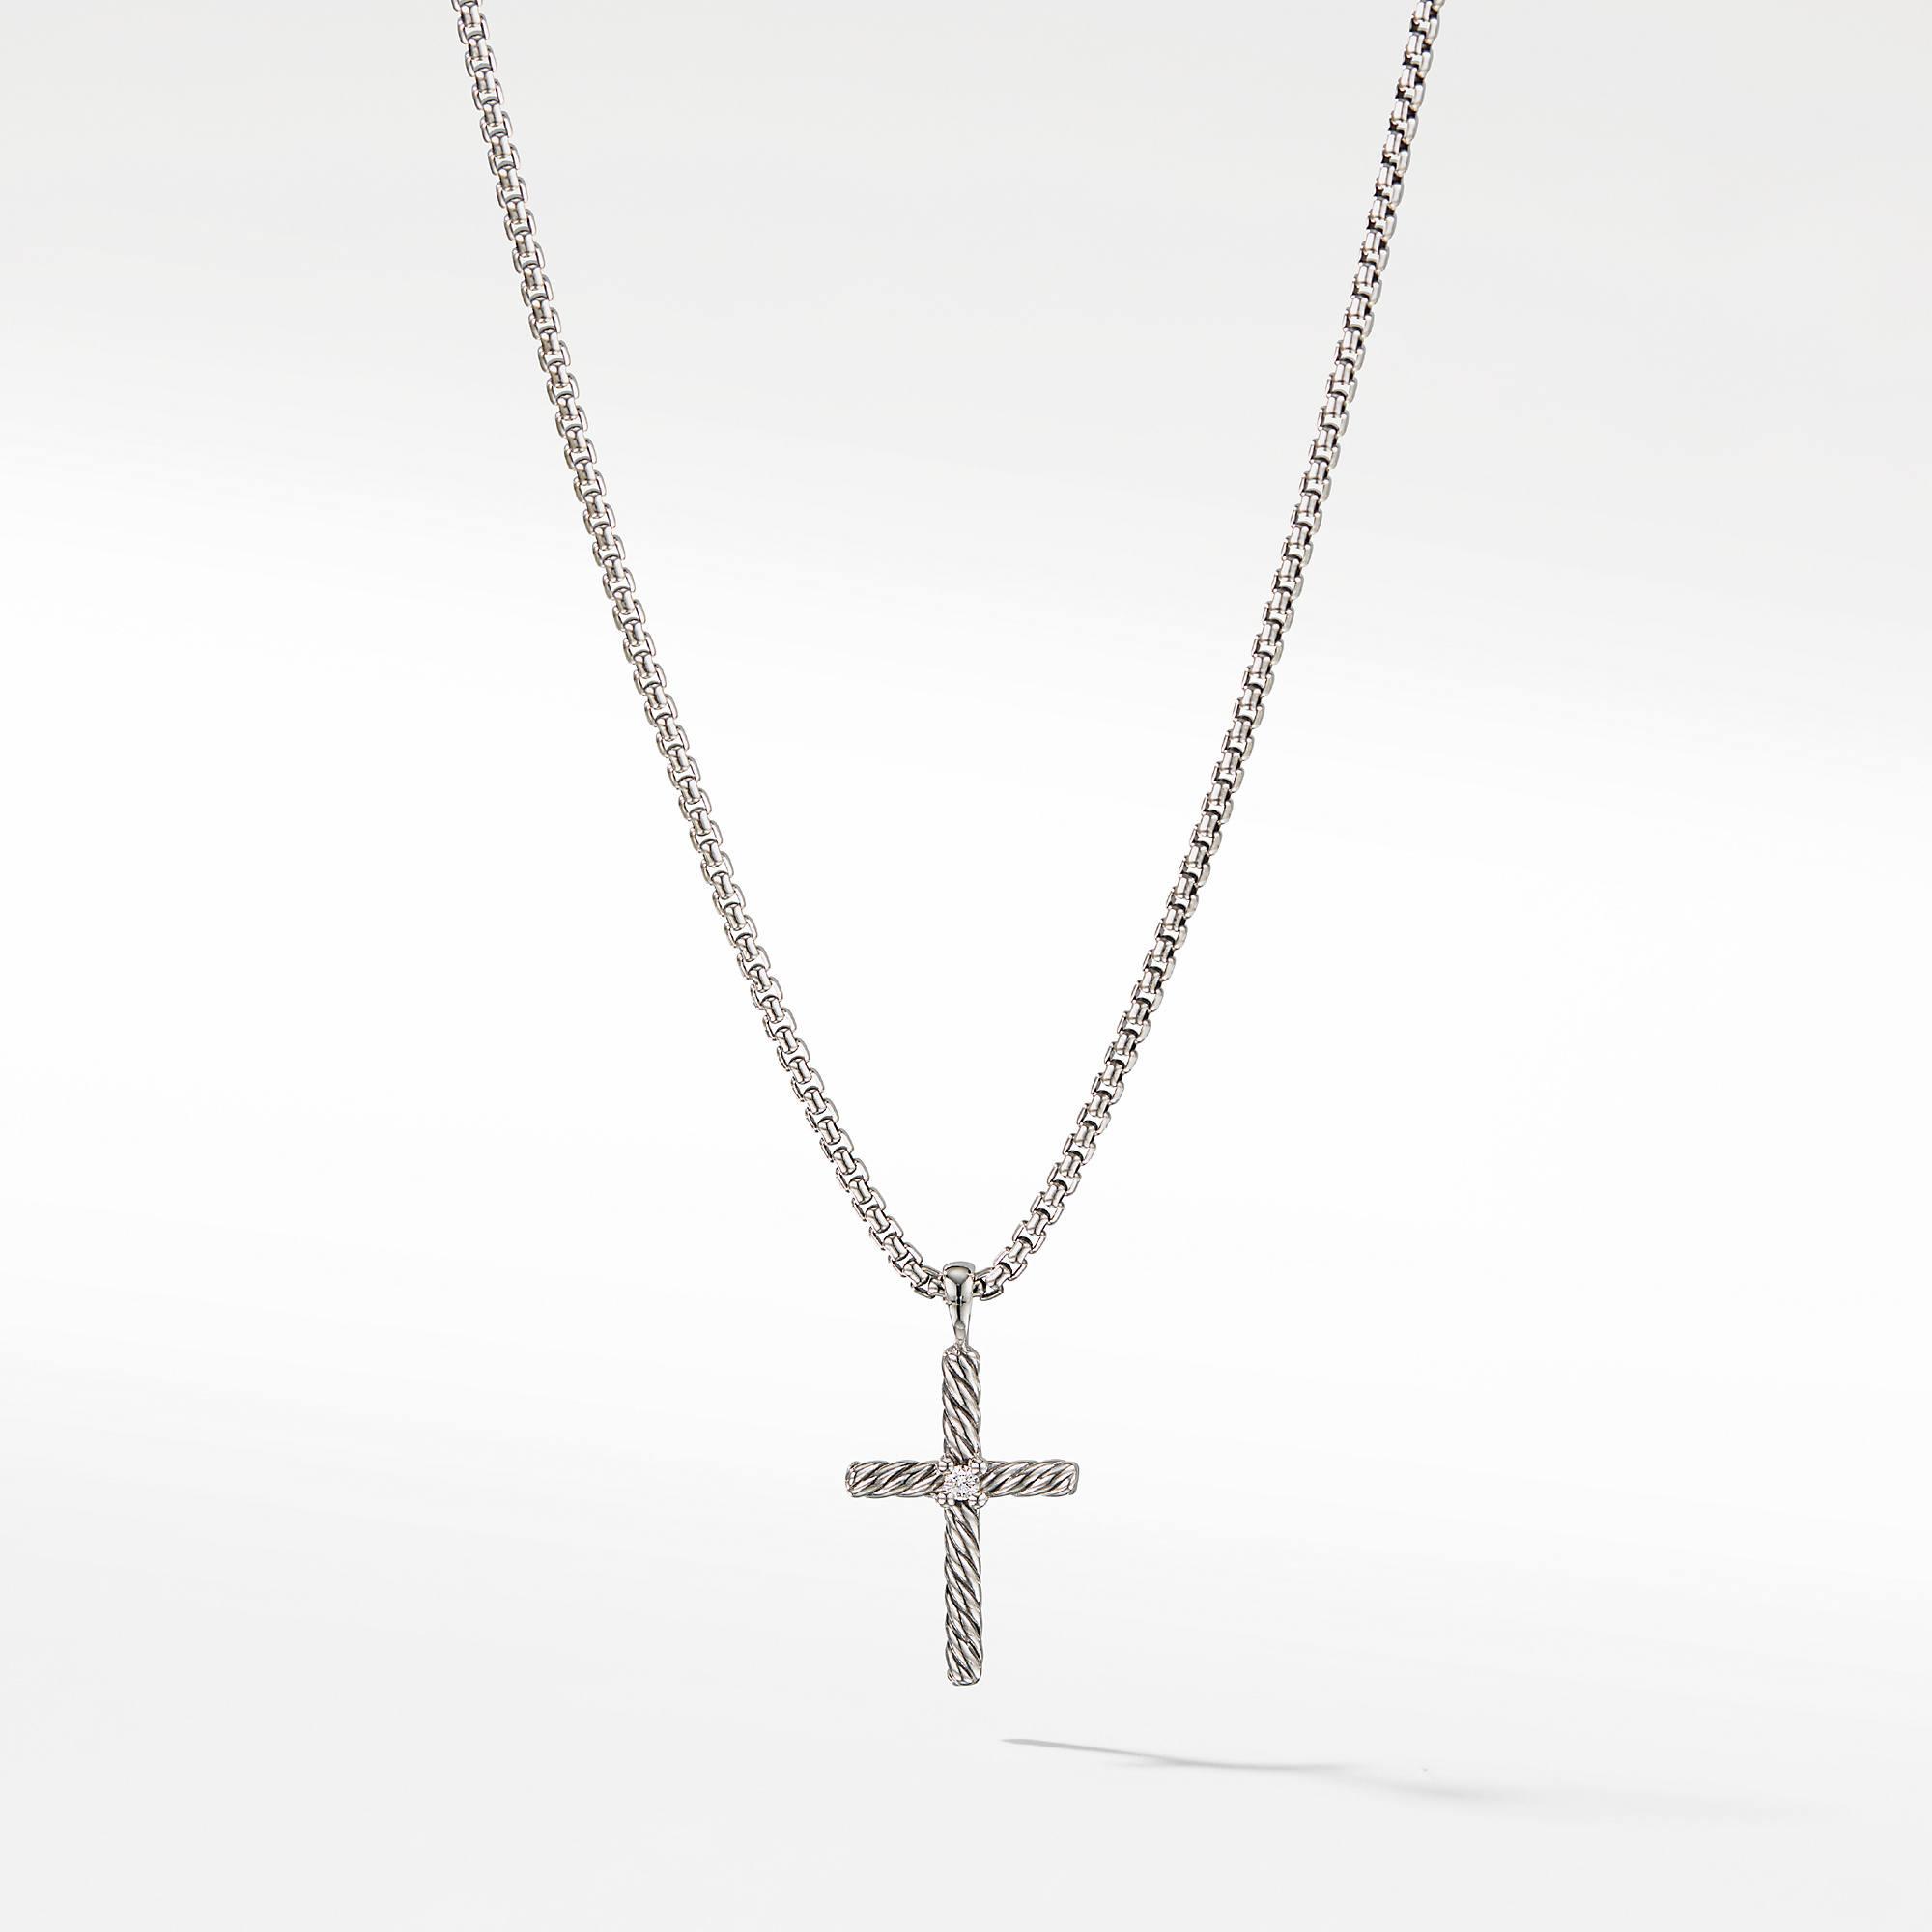 David Yurman Petite Cross Necklace with Diamond